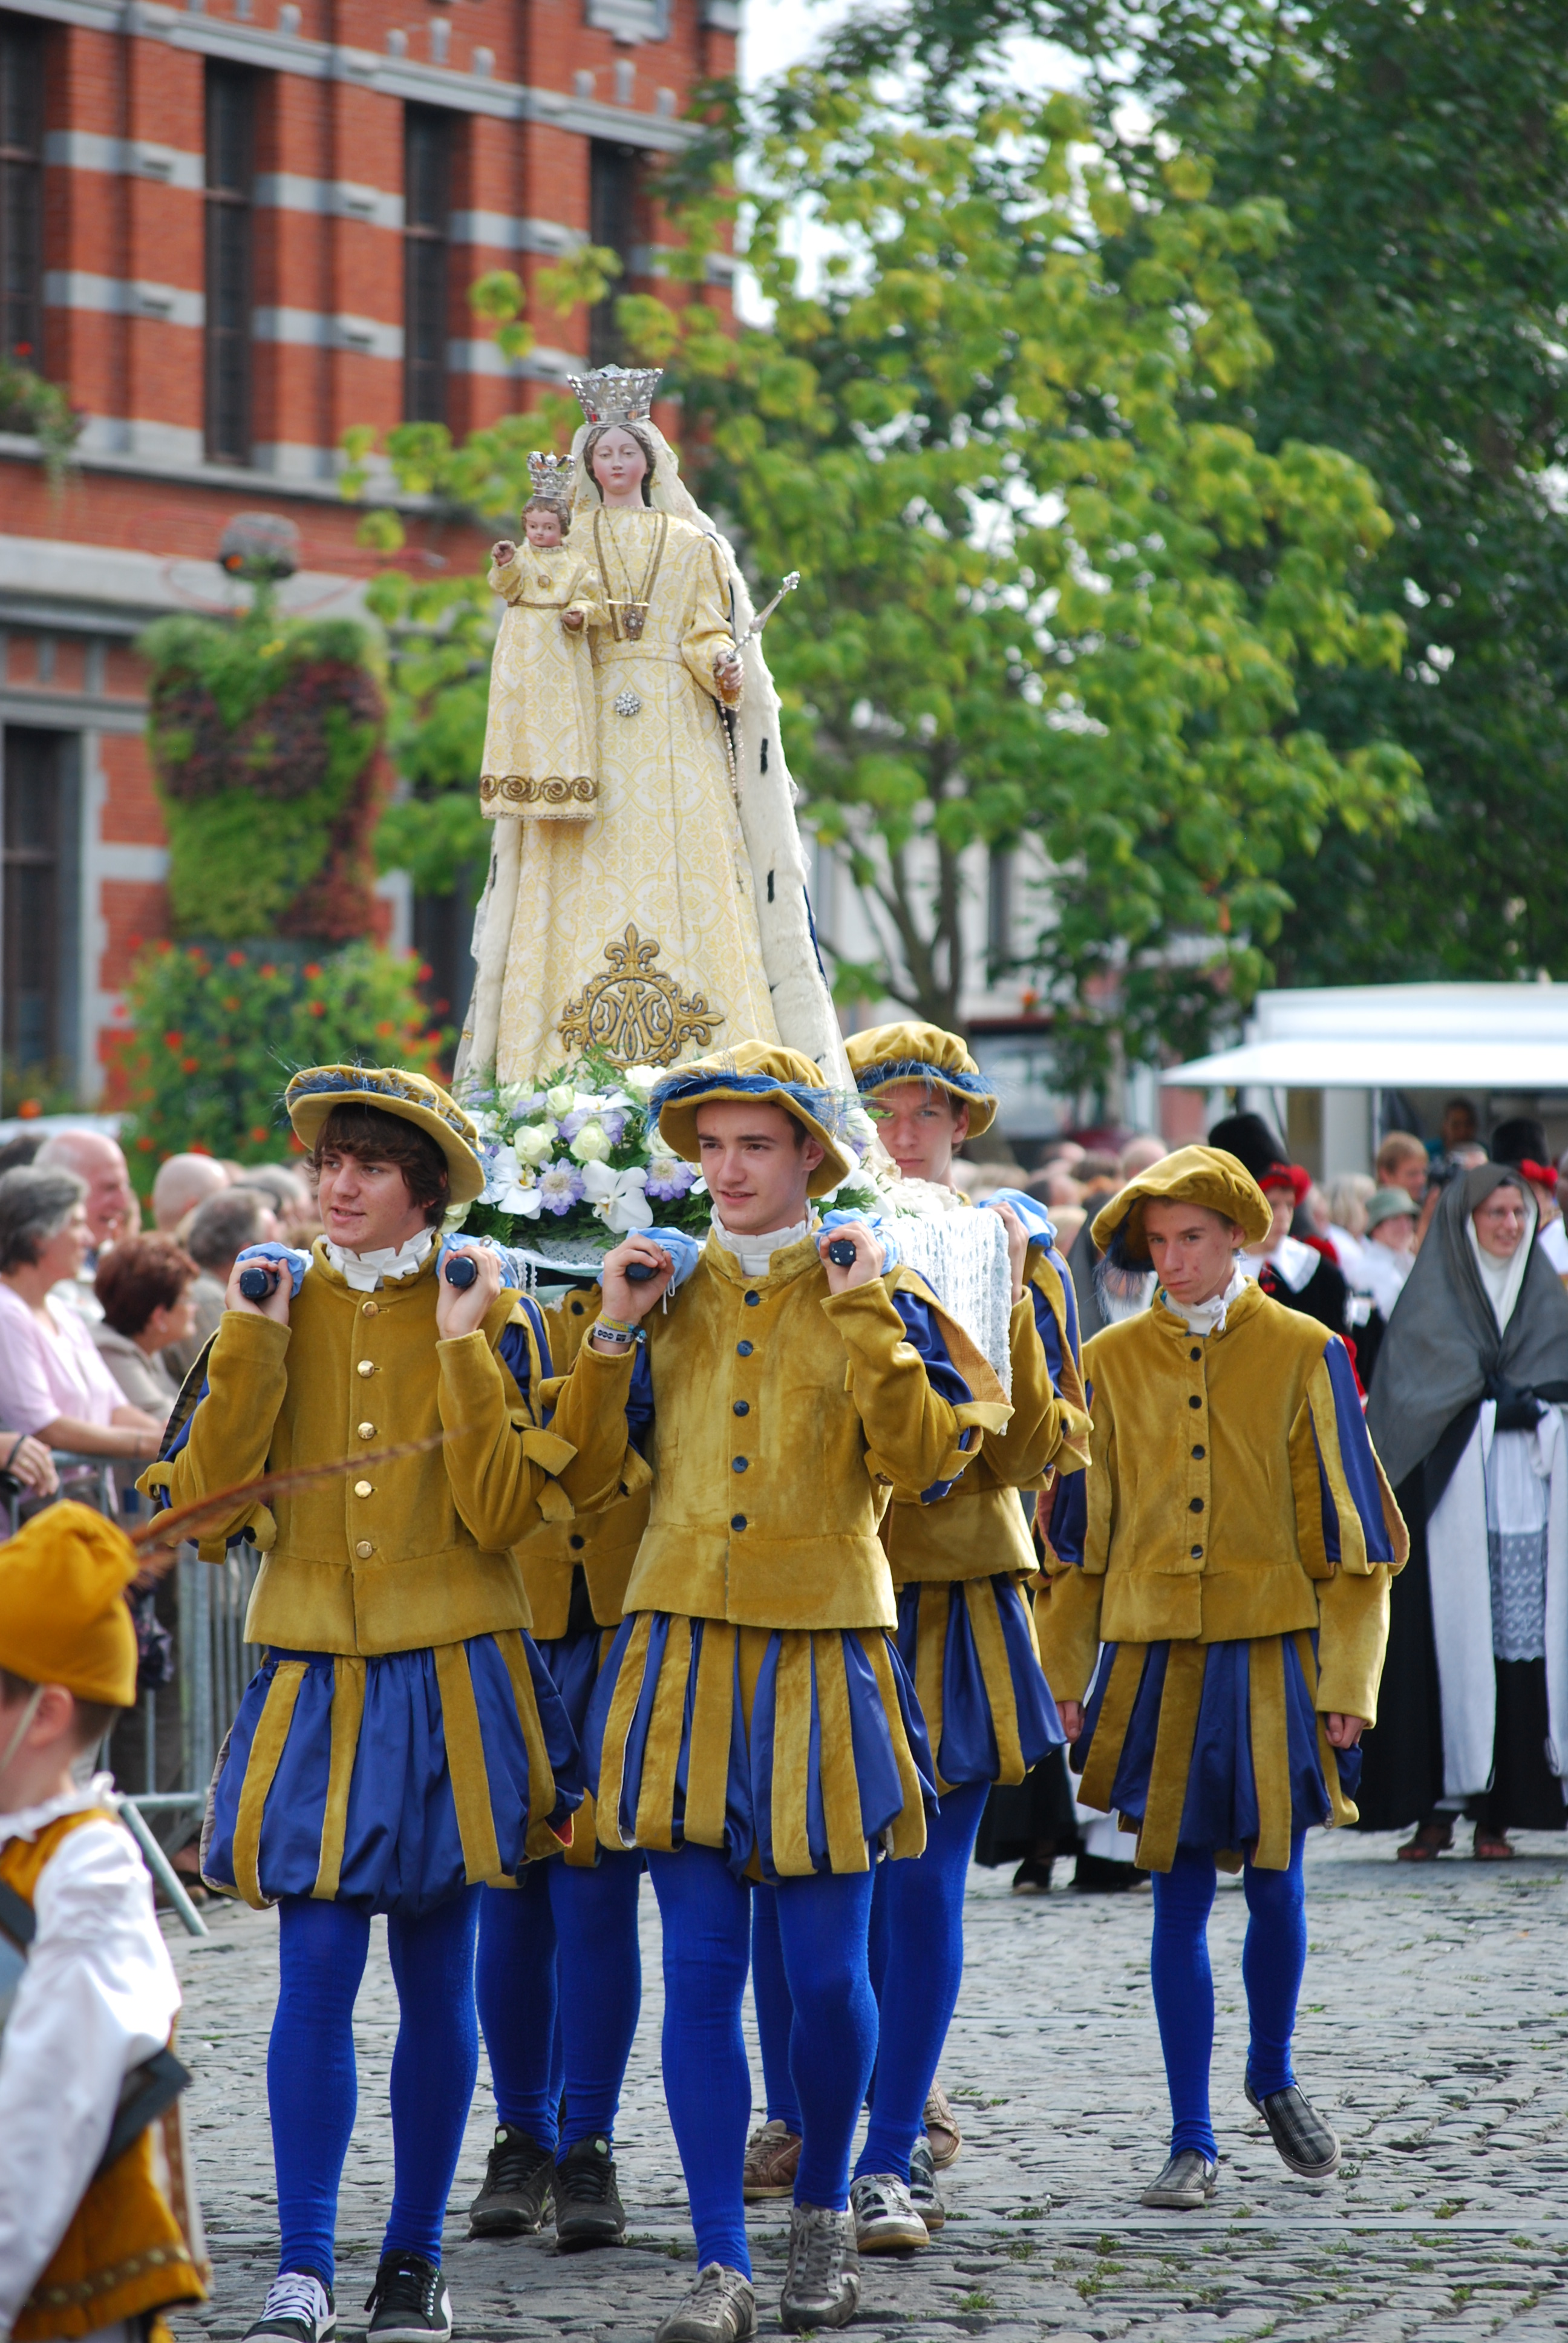 Le Festin, une fête Renaissance et historique à Lessines